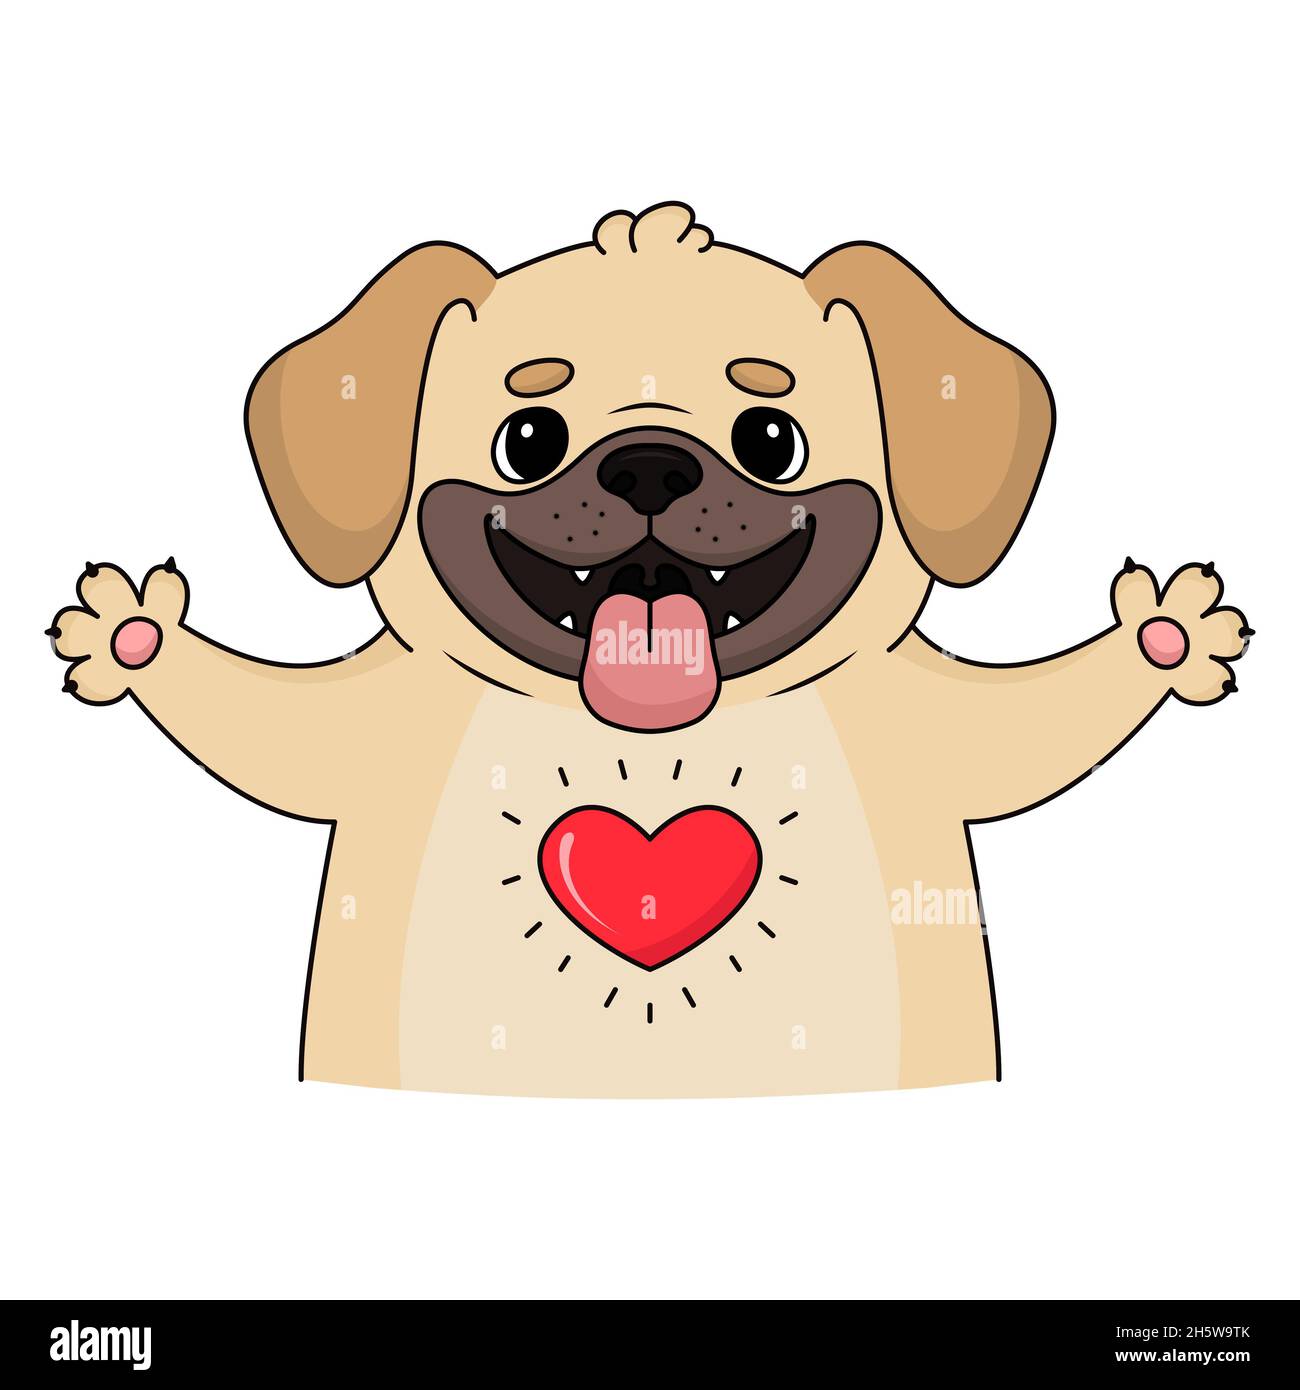 Ilustración de un hermoso fawn Puggle que le da un cálido abrazo de bienvenida con un gran corazón rojo que muestra su amor por usted. Foto de stock